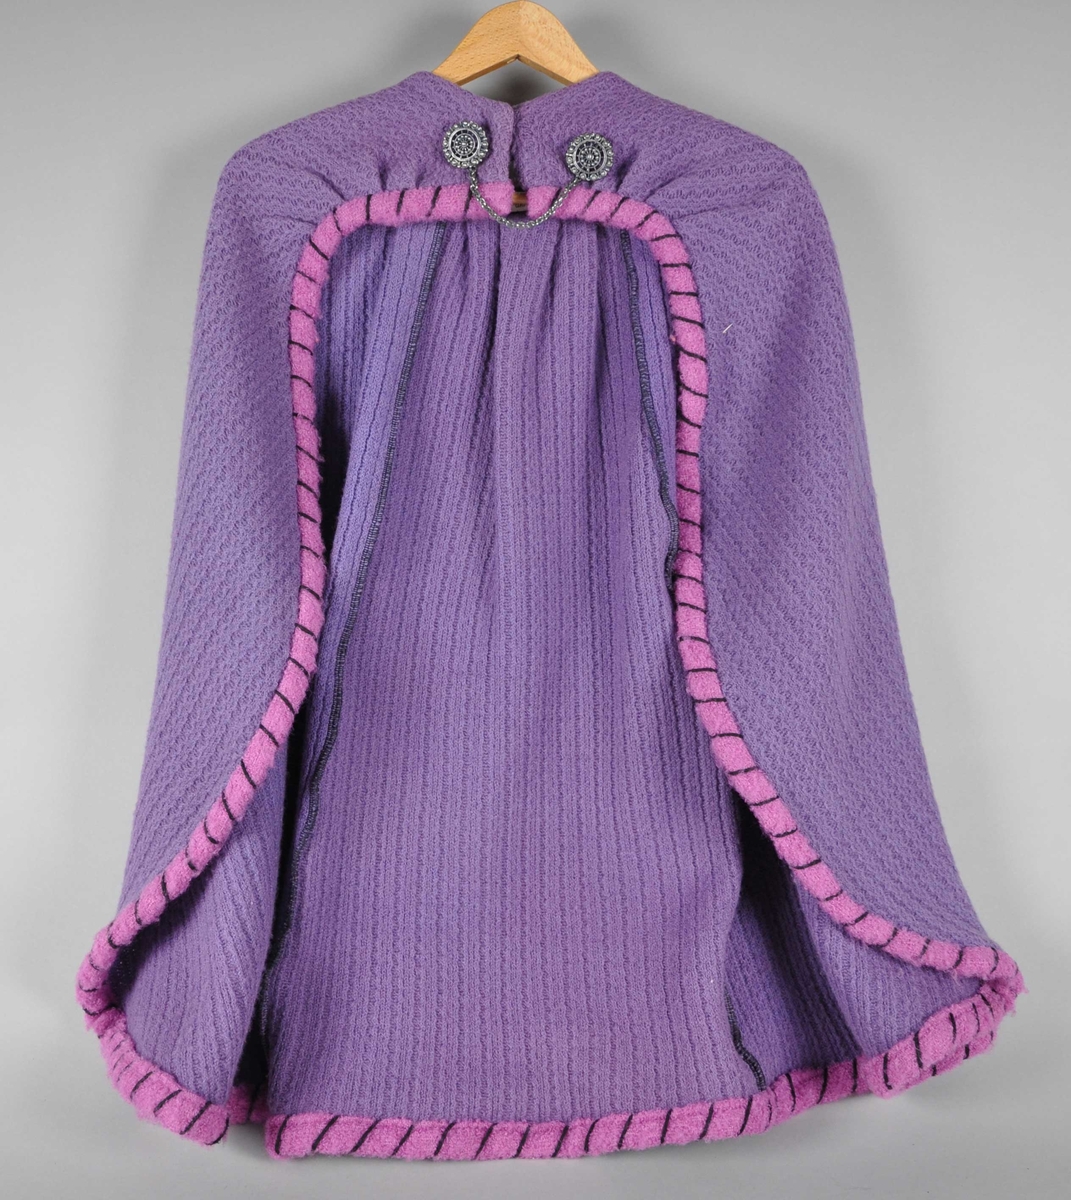 Lilla cape vevet av ull, med rosa kanter med svarte store sting. Foran på kragen lukkes kappen med to metallspenner med lenke mellom, og trykknapper.